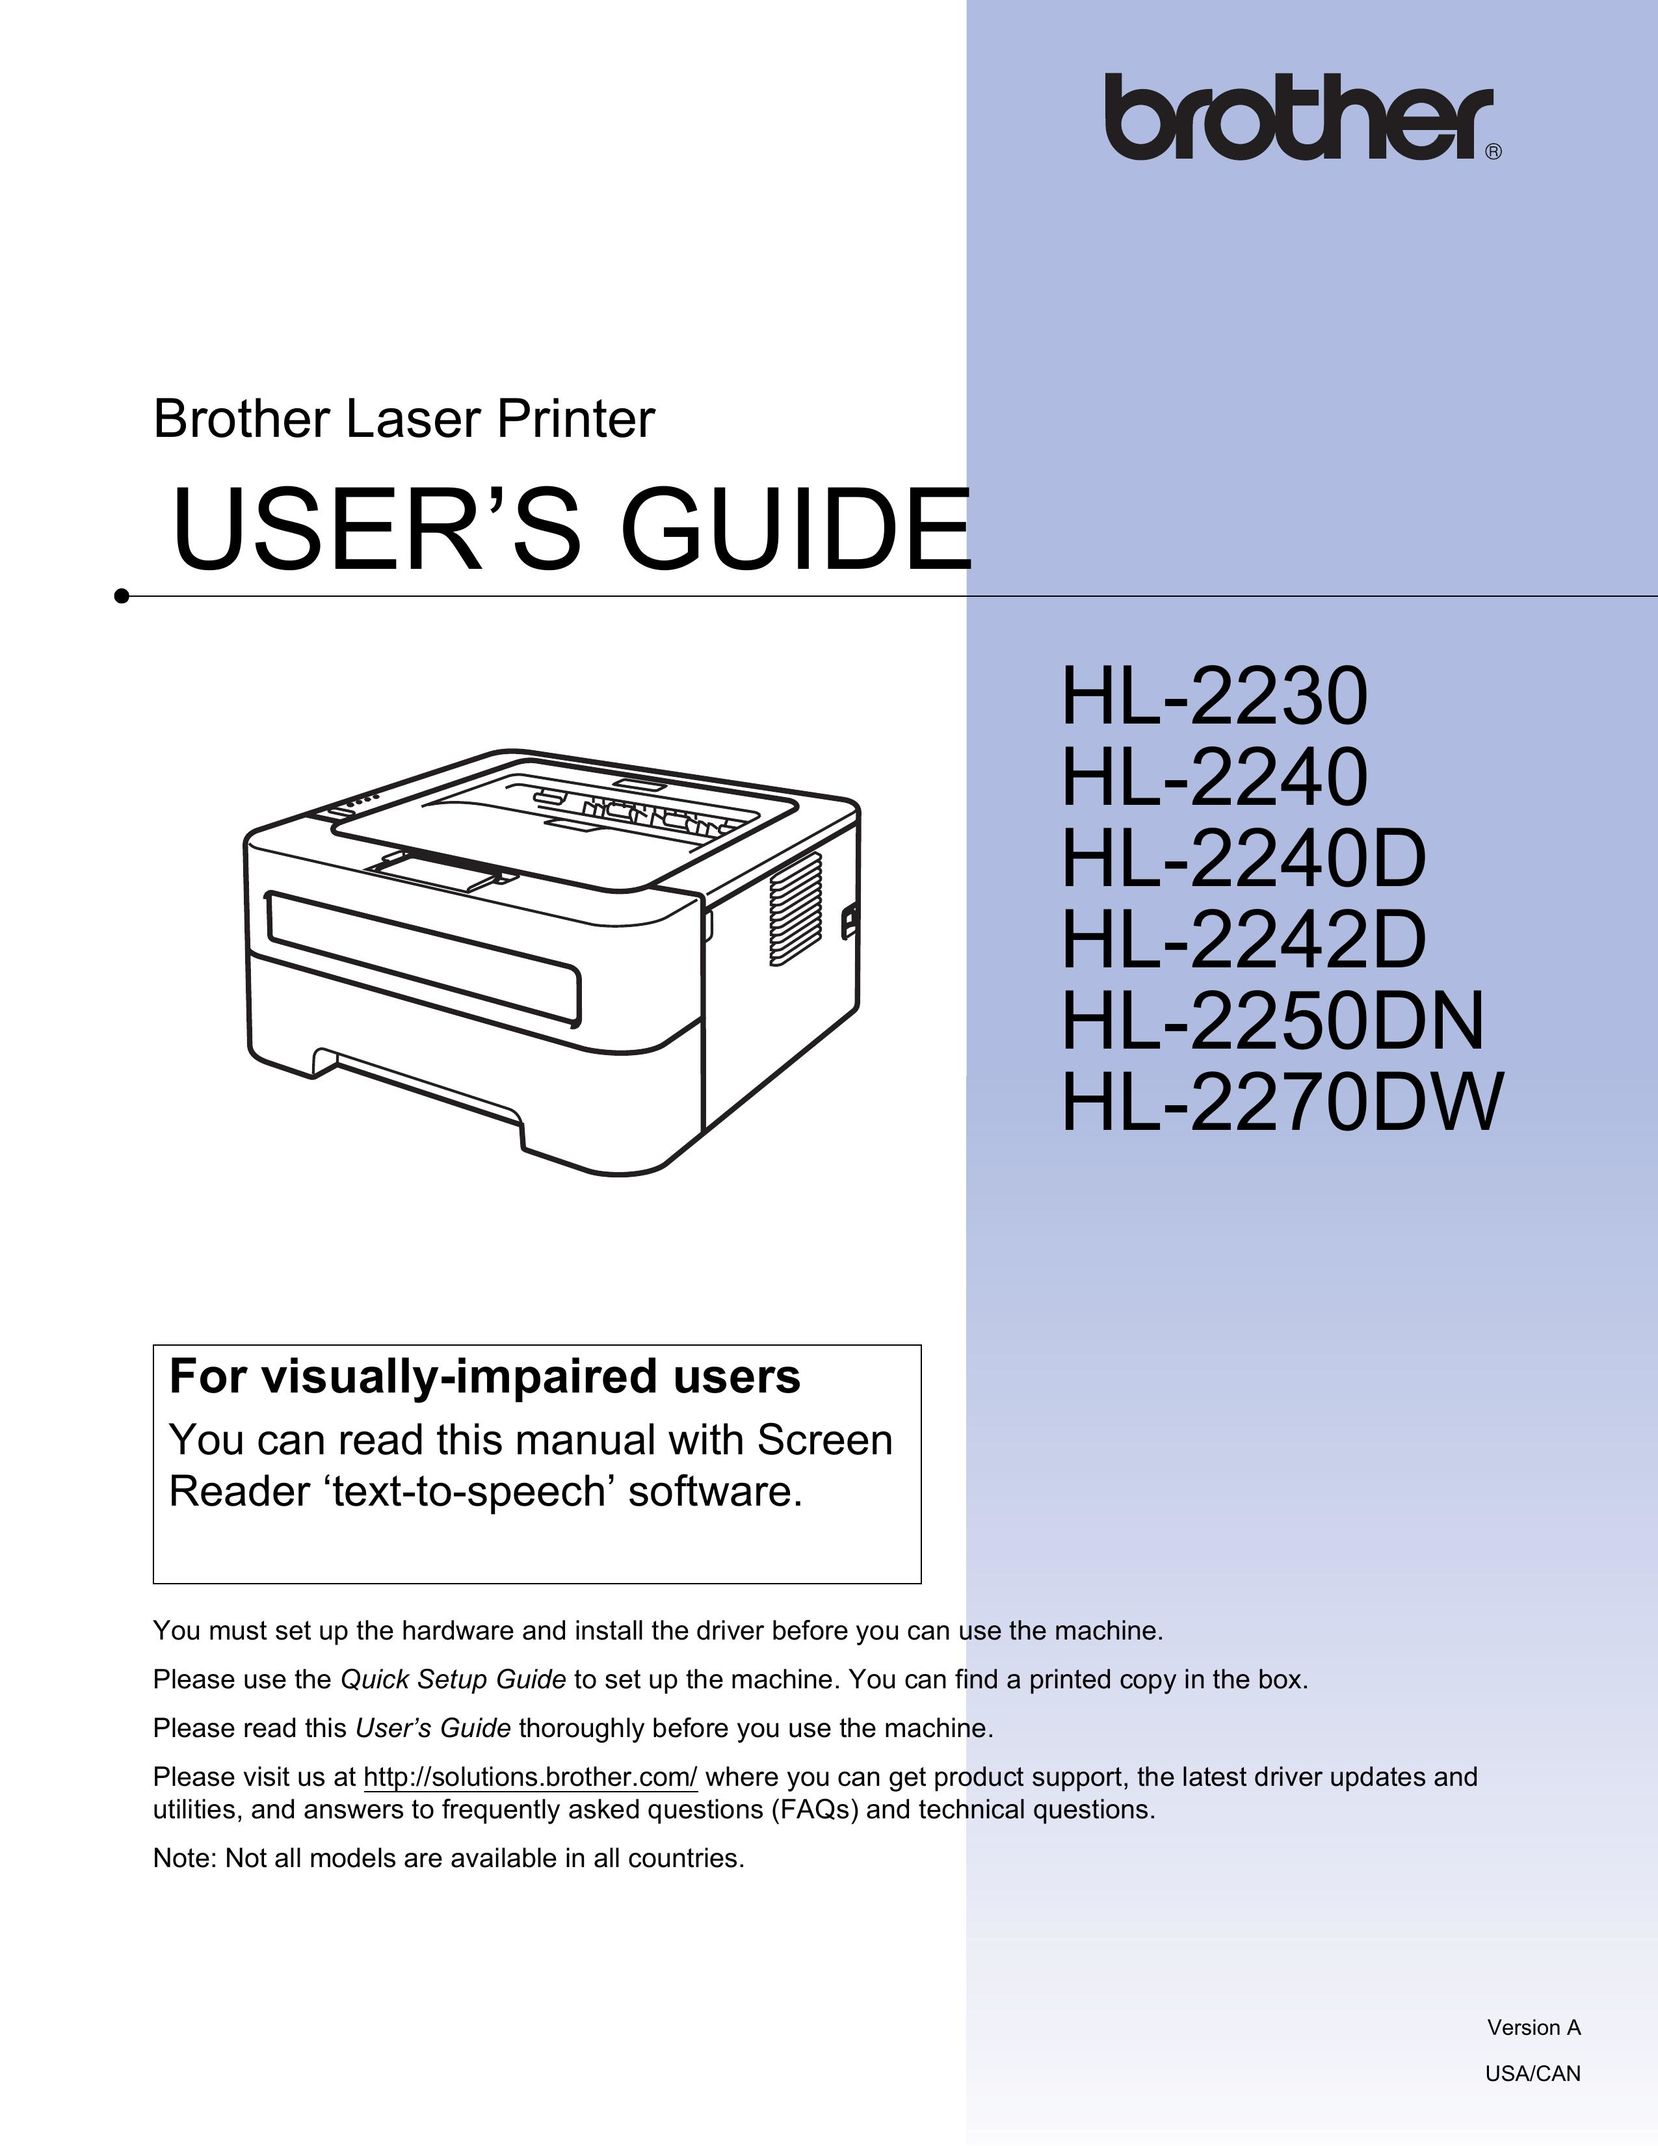 Brother 2270DW Printer User Manual